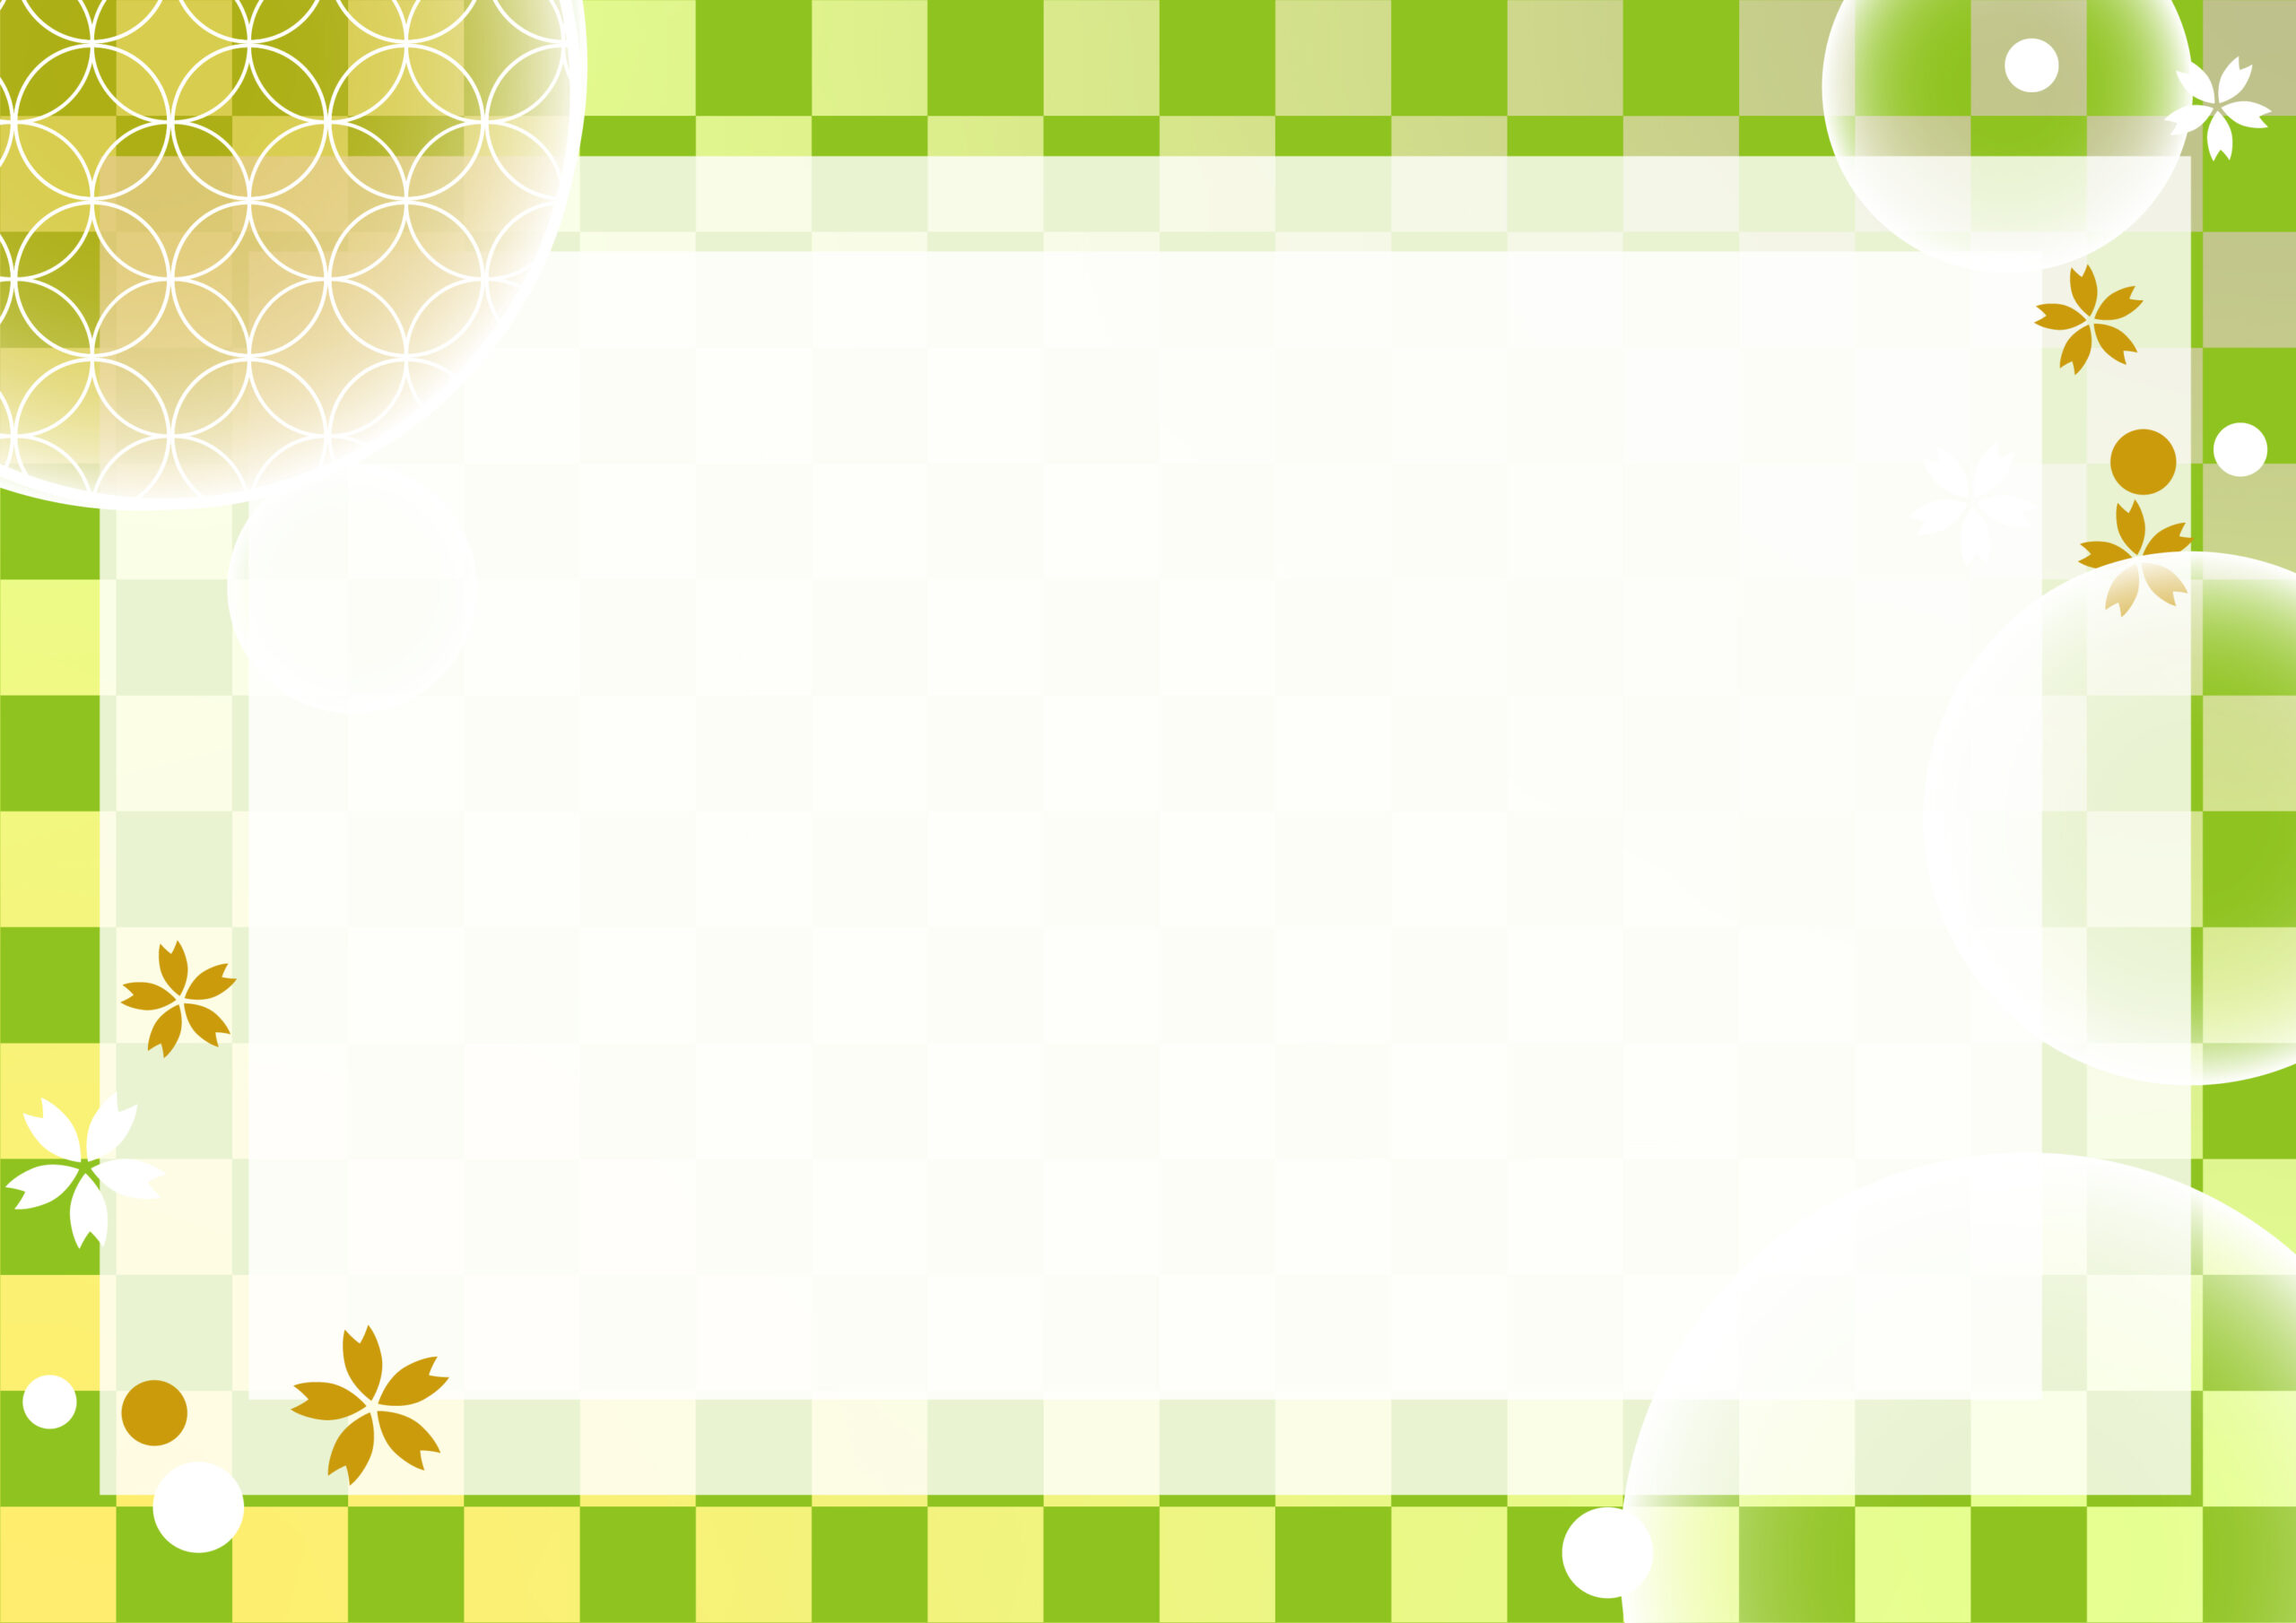 お誕生日に送るメッセージカードやお手紙の便箋、バースデーカードの飾り枠などに活用できるかわいい和風デザインのフレーム素材になります。市松模様の背景や桜、麻の葉模様といったおしゃれな和柄のイラストが描かれております。ダウンロード：JP